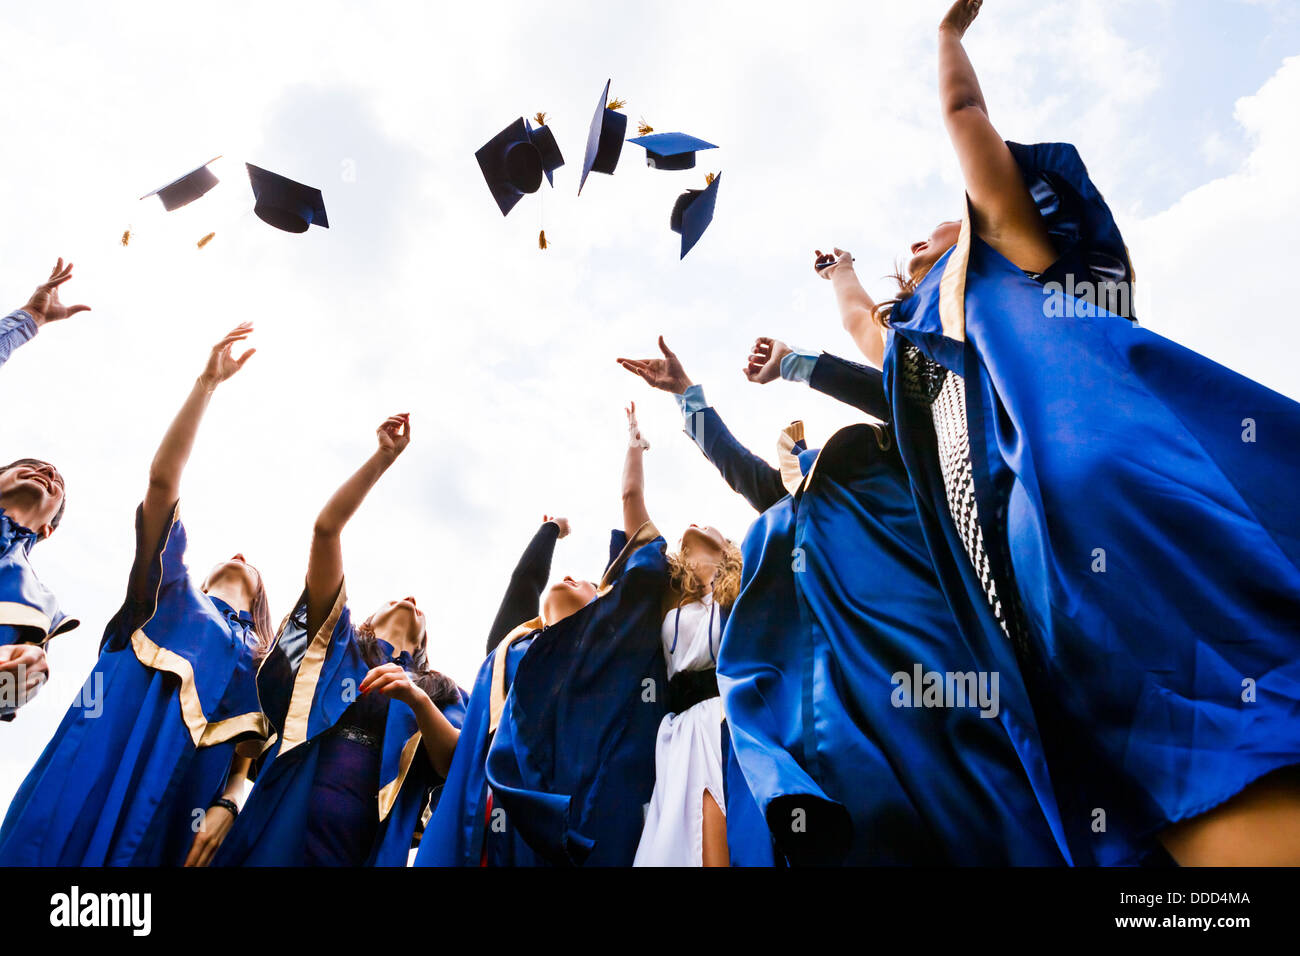 Bild der glückliche junge Absolventen, die Hüte in die Luft werfen Stockfoto